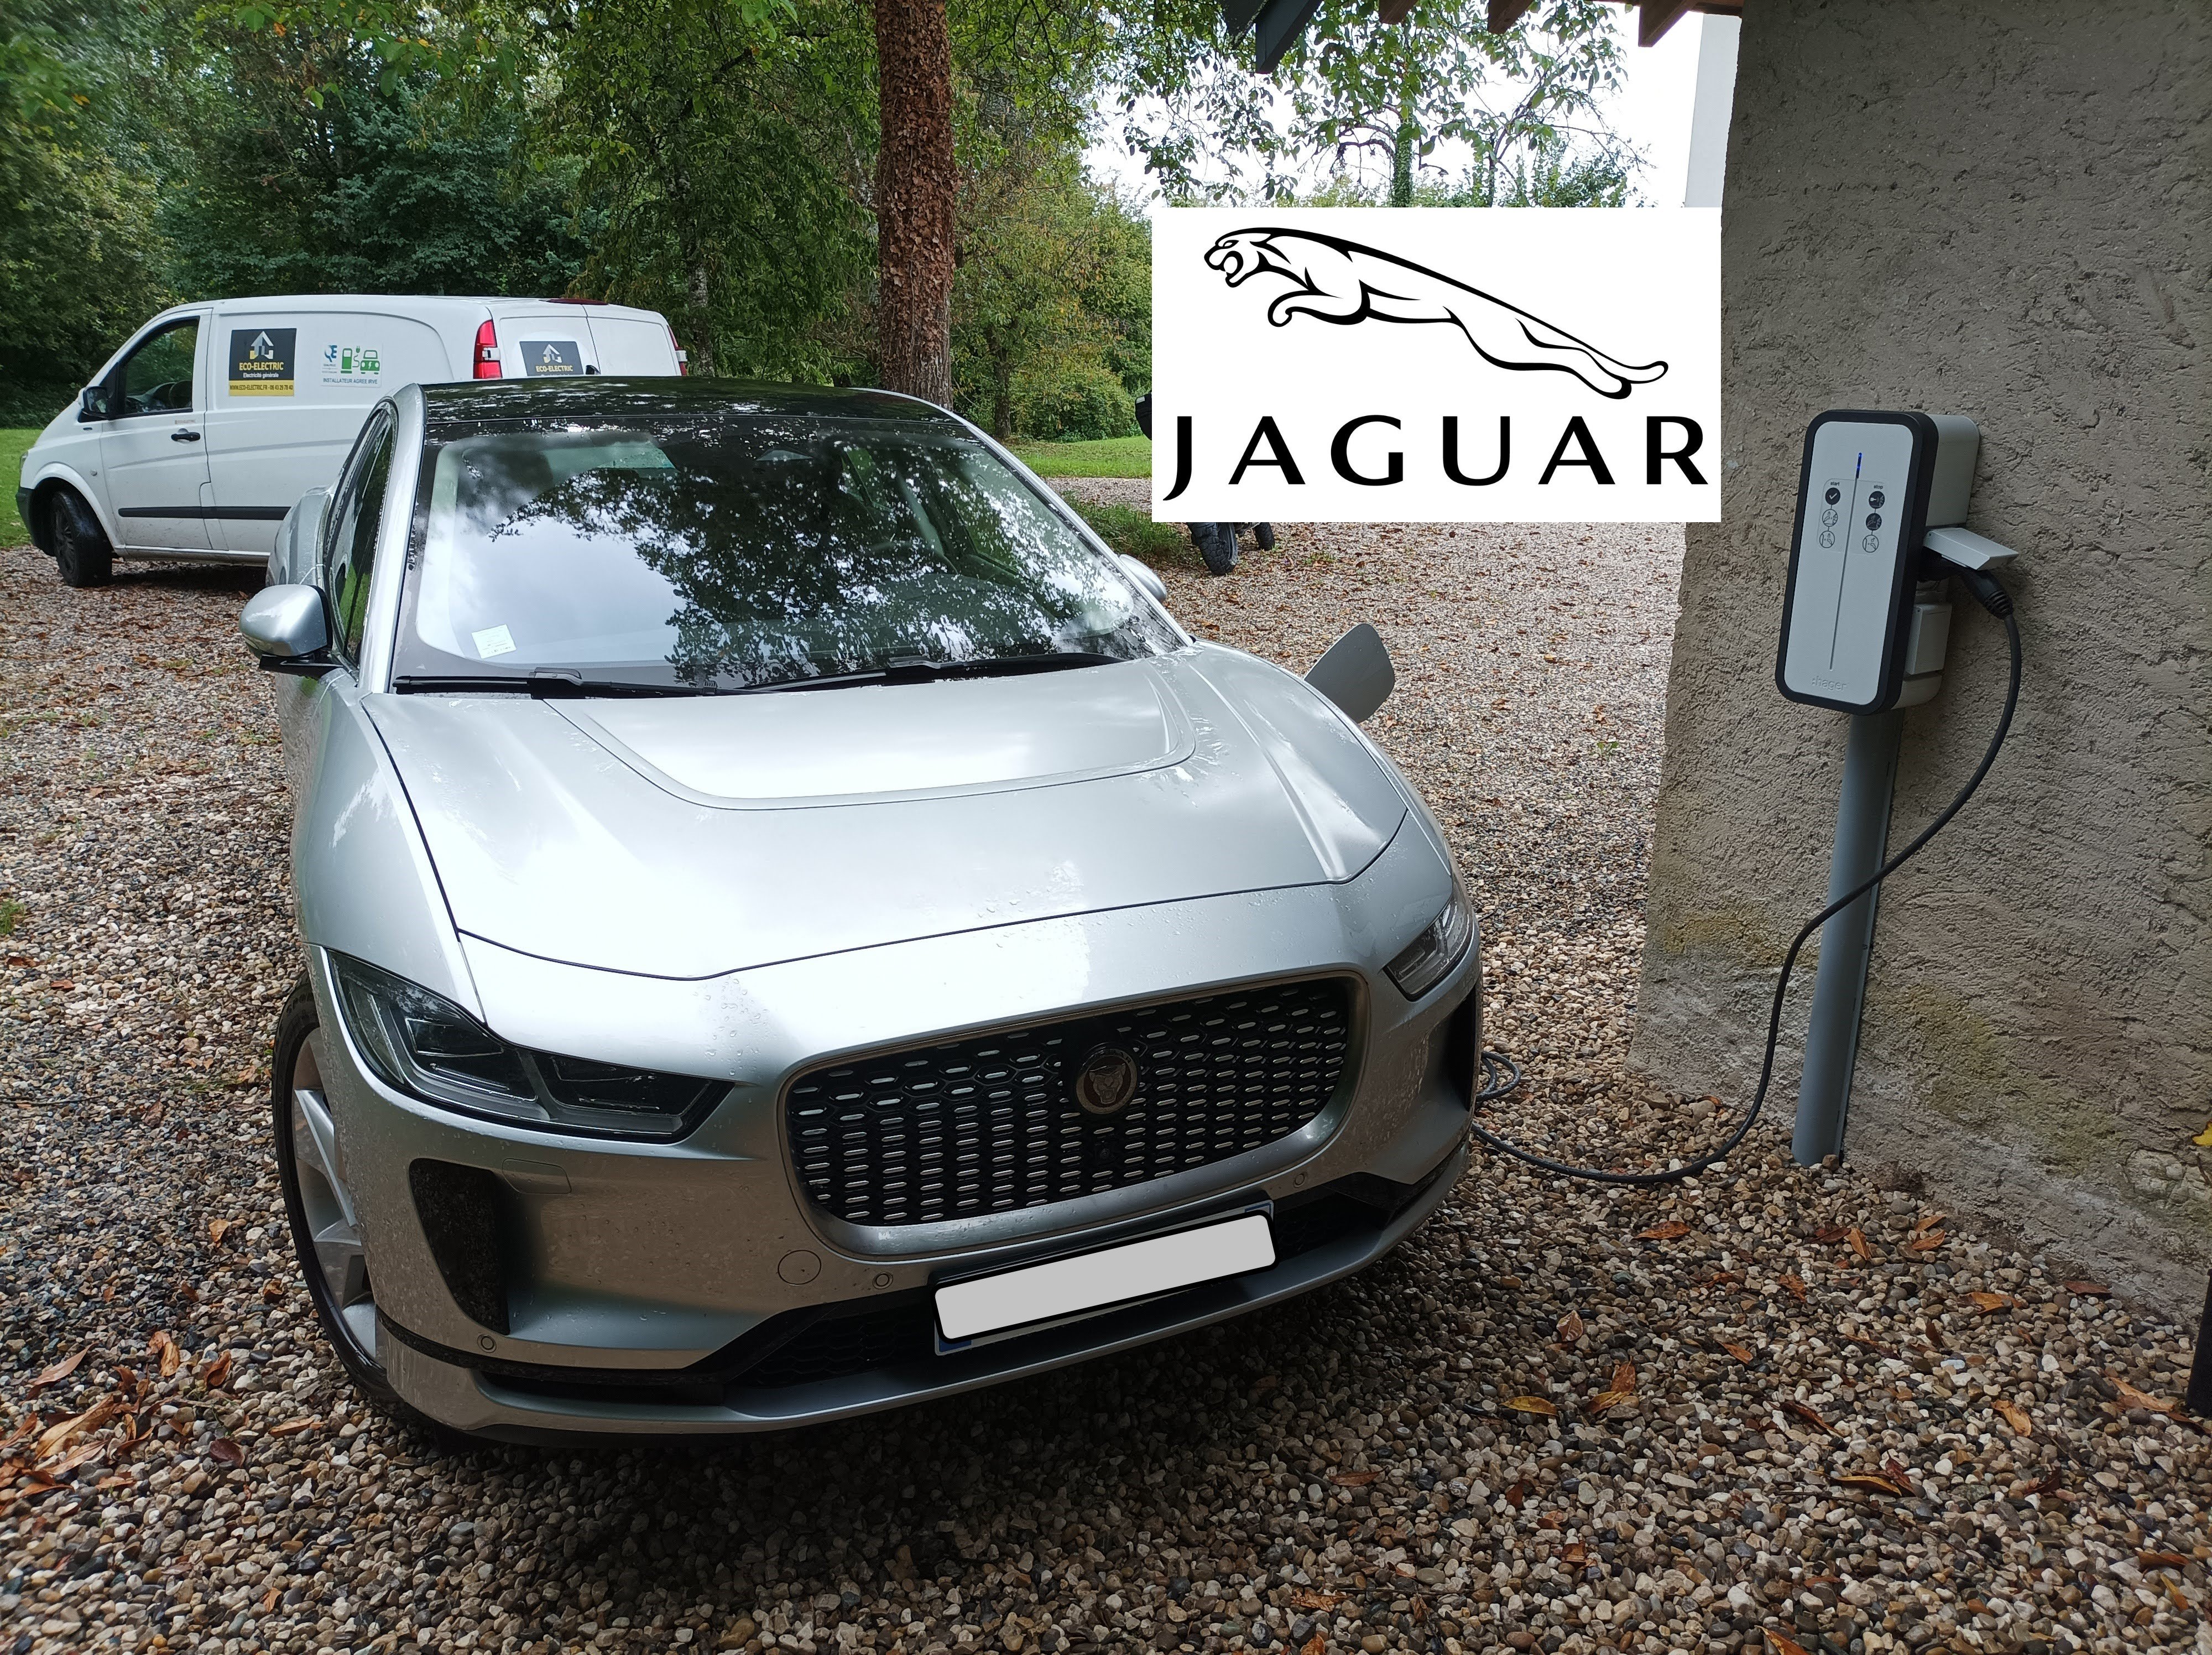 borne de recharge jaguar Chambéry